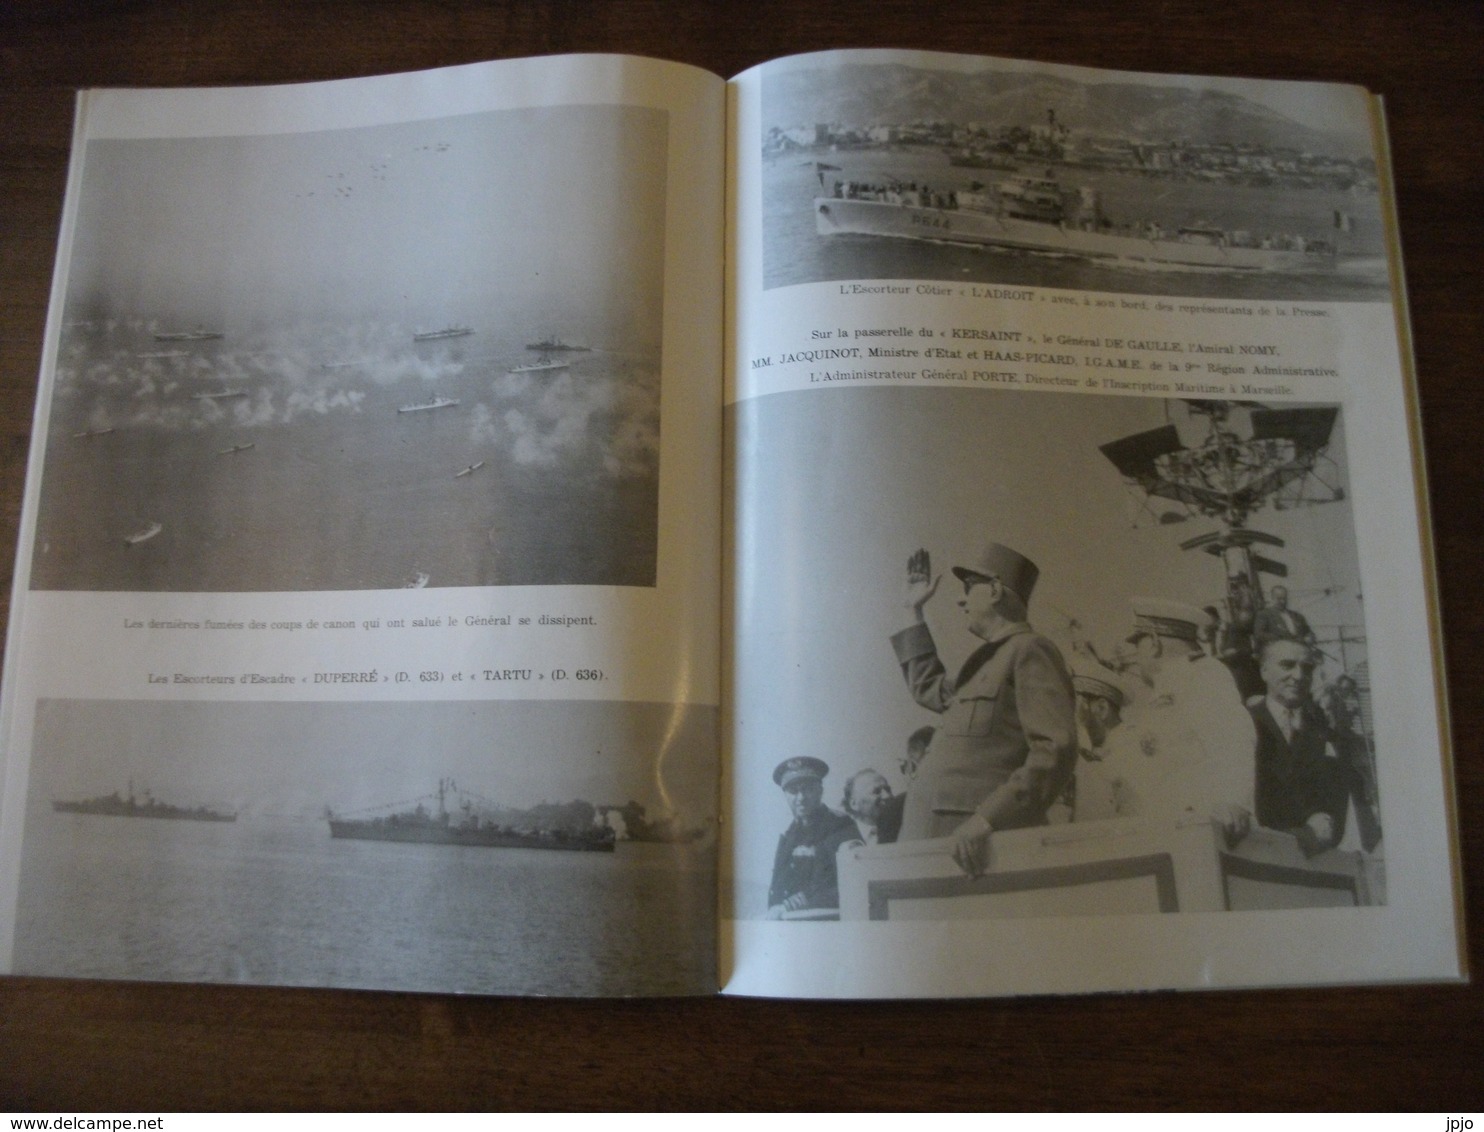 Revue Navale de Toulon, 14 Juillet 1958. Passée par le Général de Gaulle